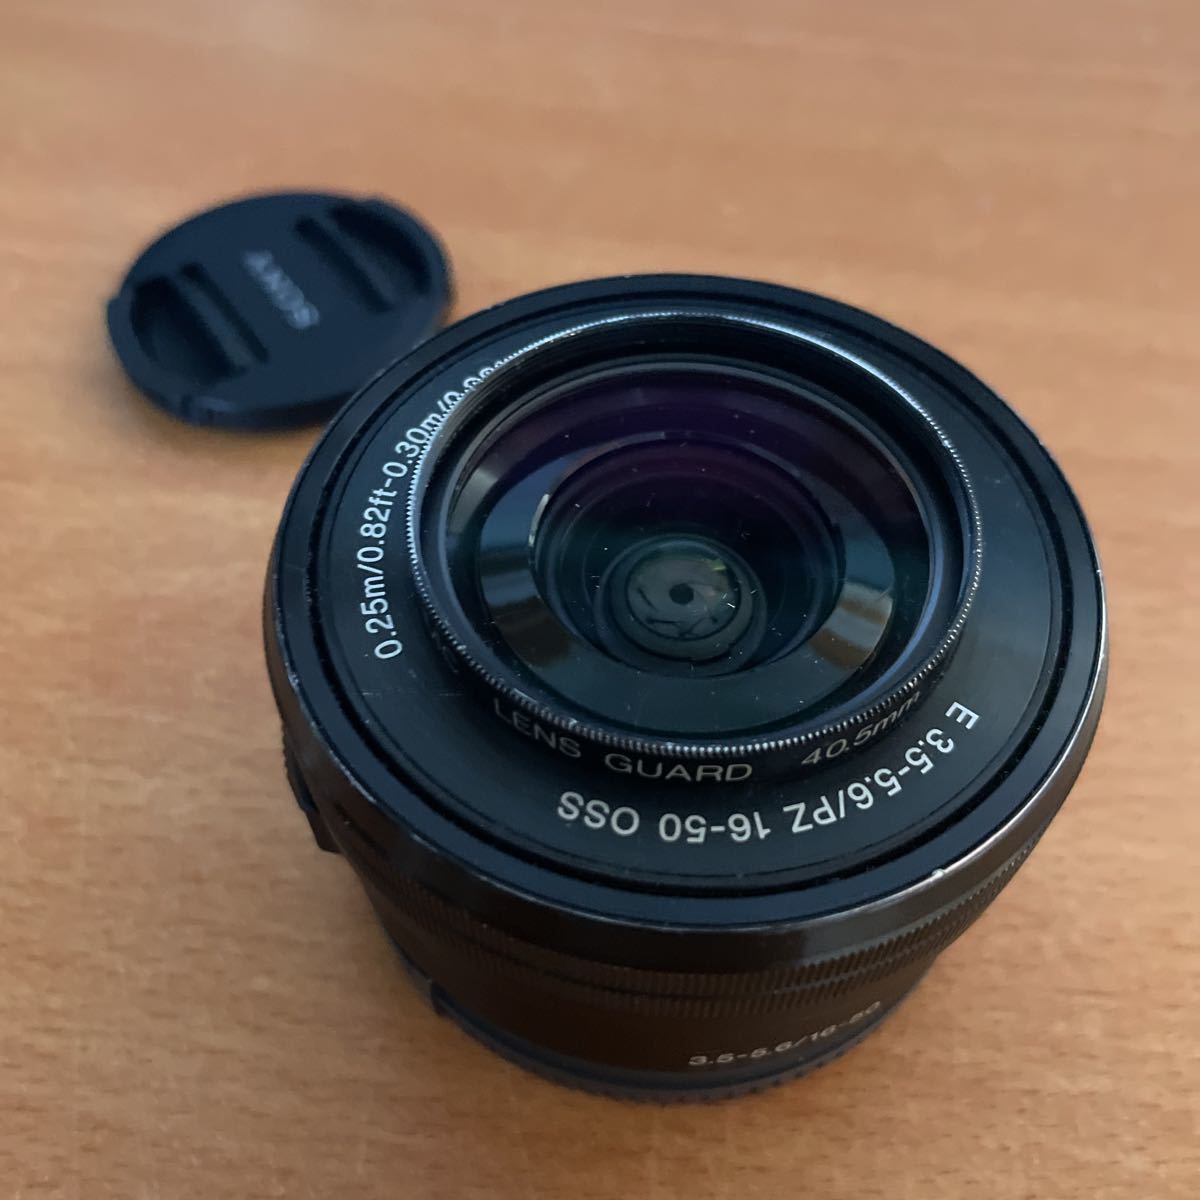 [1 jpy start ]SONY digital single-lens camera *α~ E mount for lens SELP1650 E PZ 16-50mm F3.5-5.6 OSS[ used ]